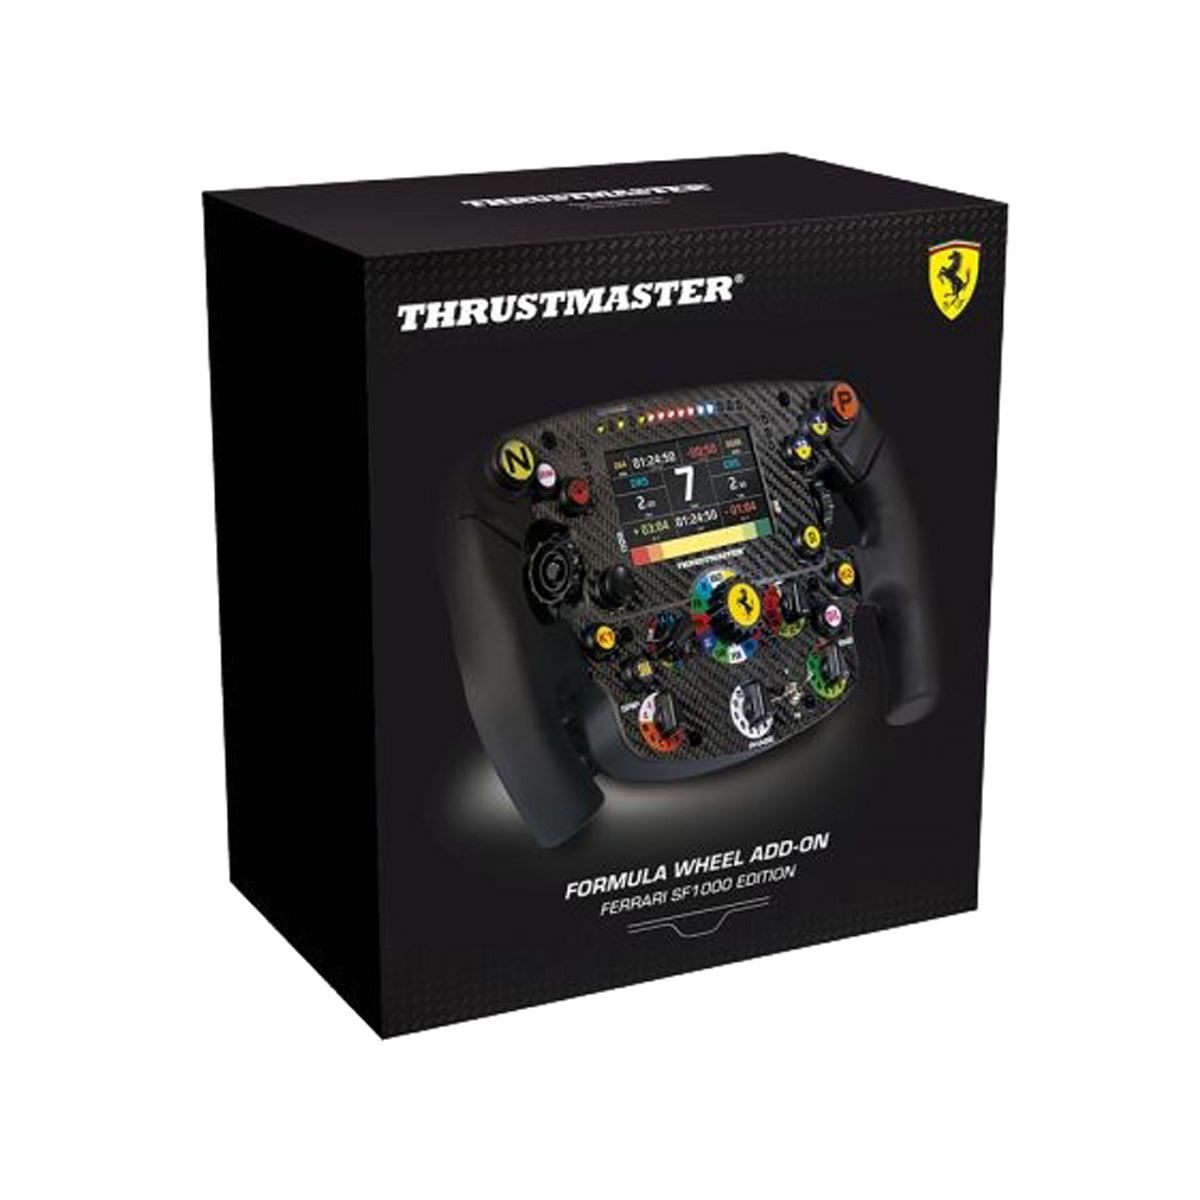 Thrustmaster Ferrari SF1000 Edition Formula Wheel Add-On.